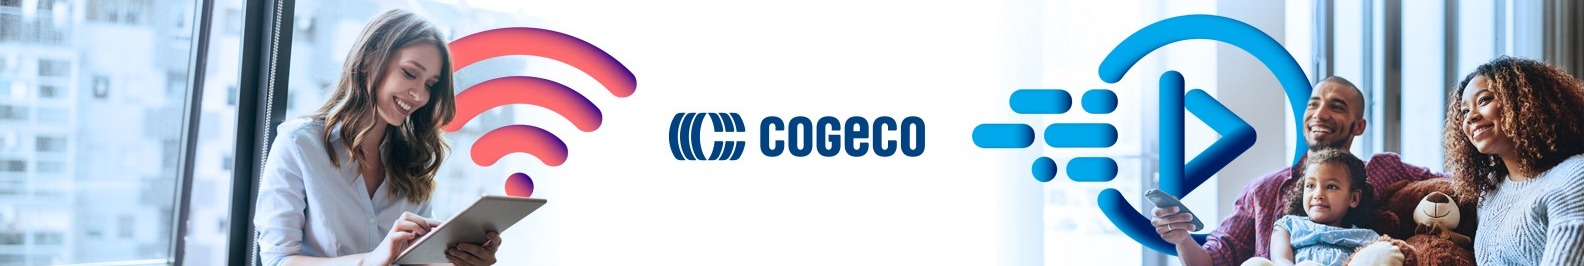 Cogeco background